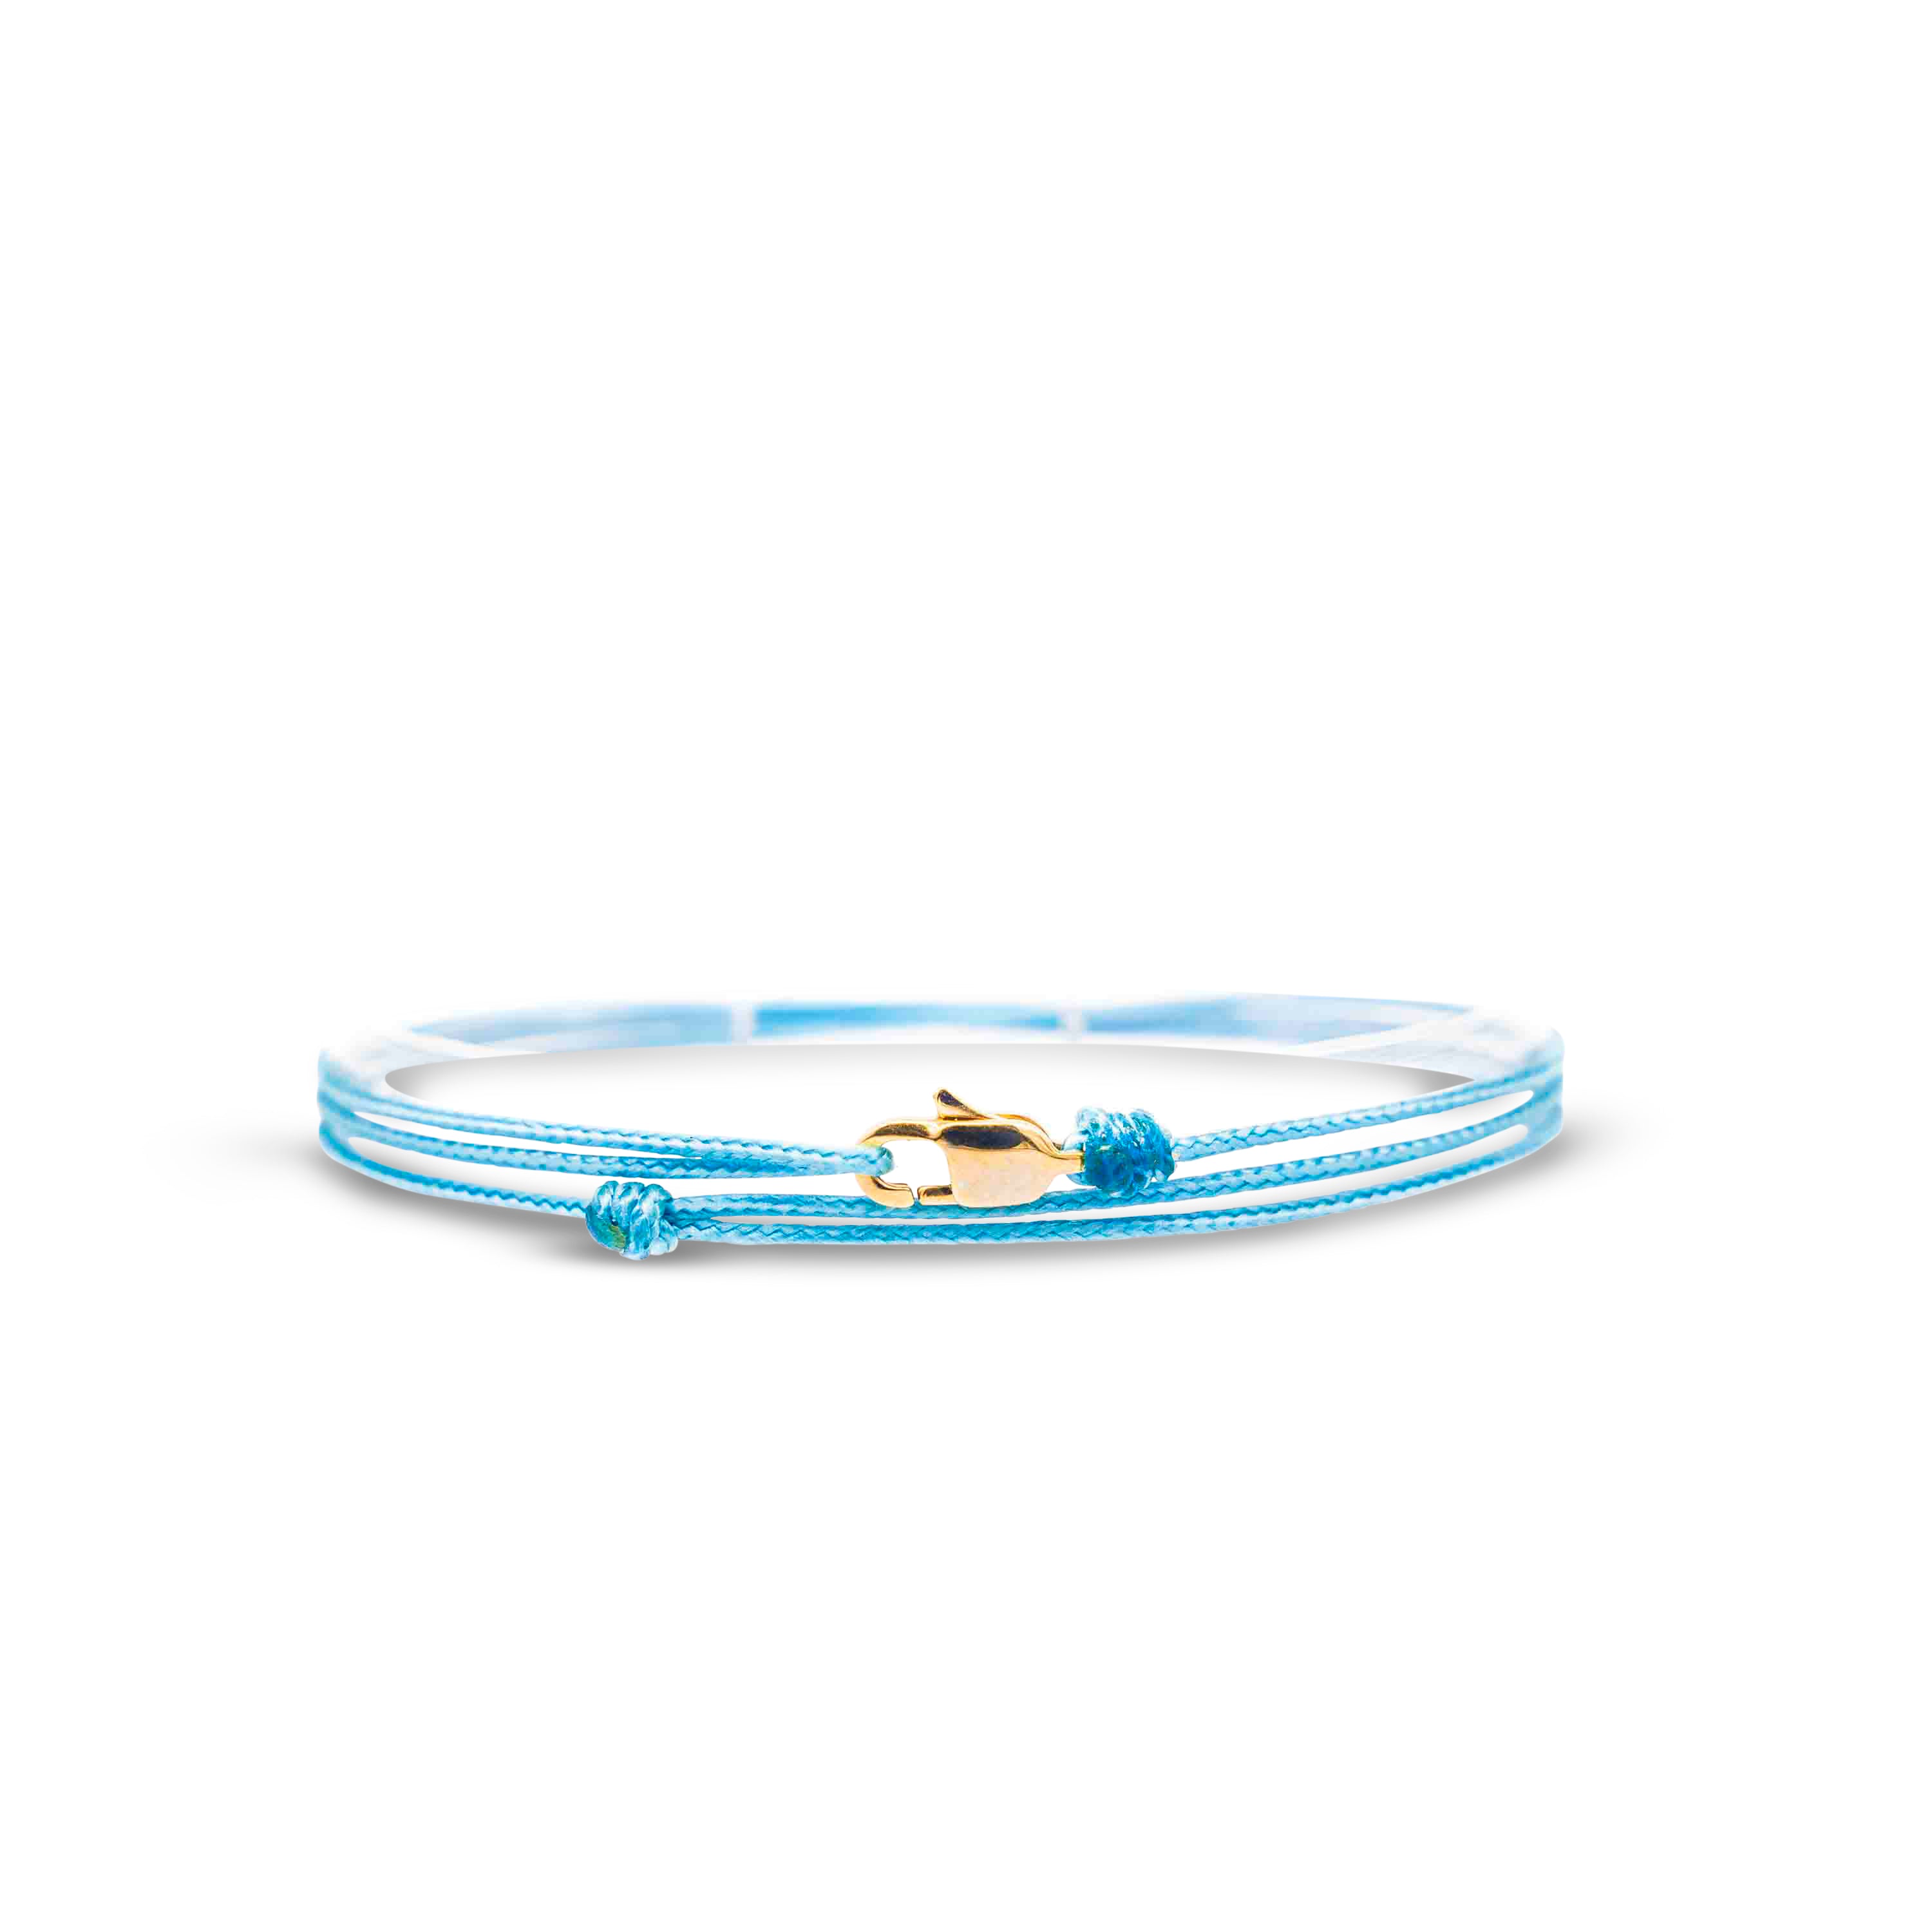 Snap Hook Wrap Bracelet - Light Blue Gold